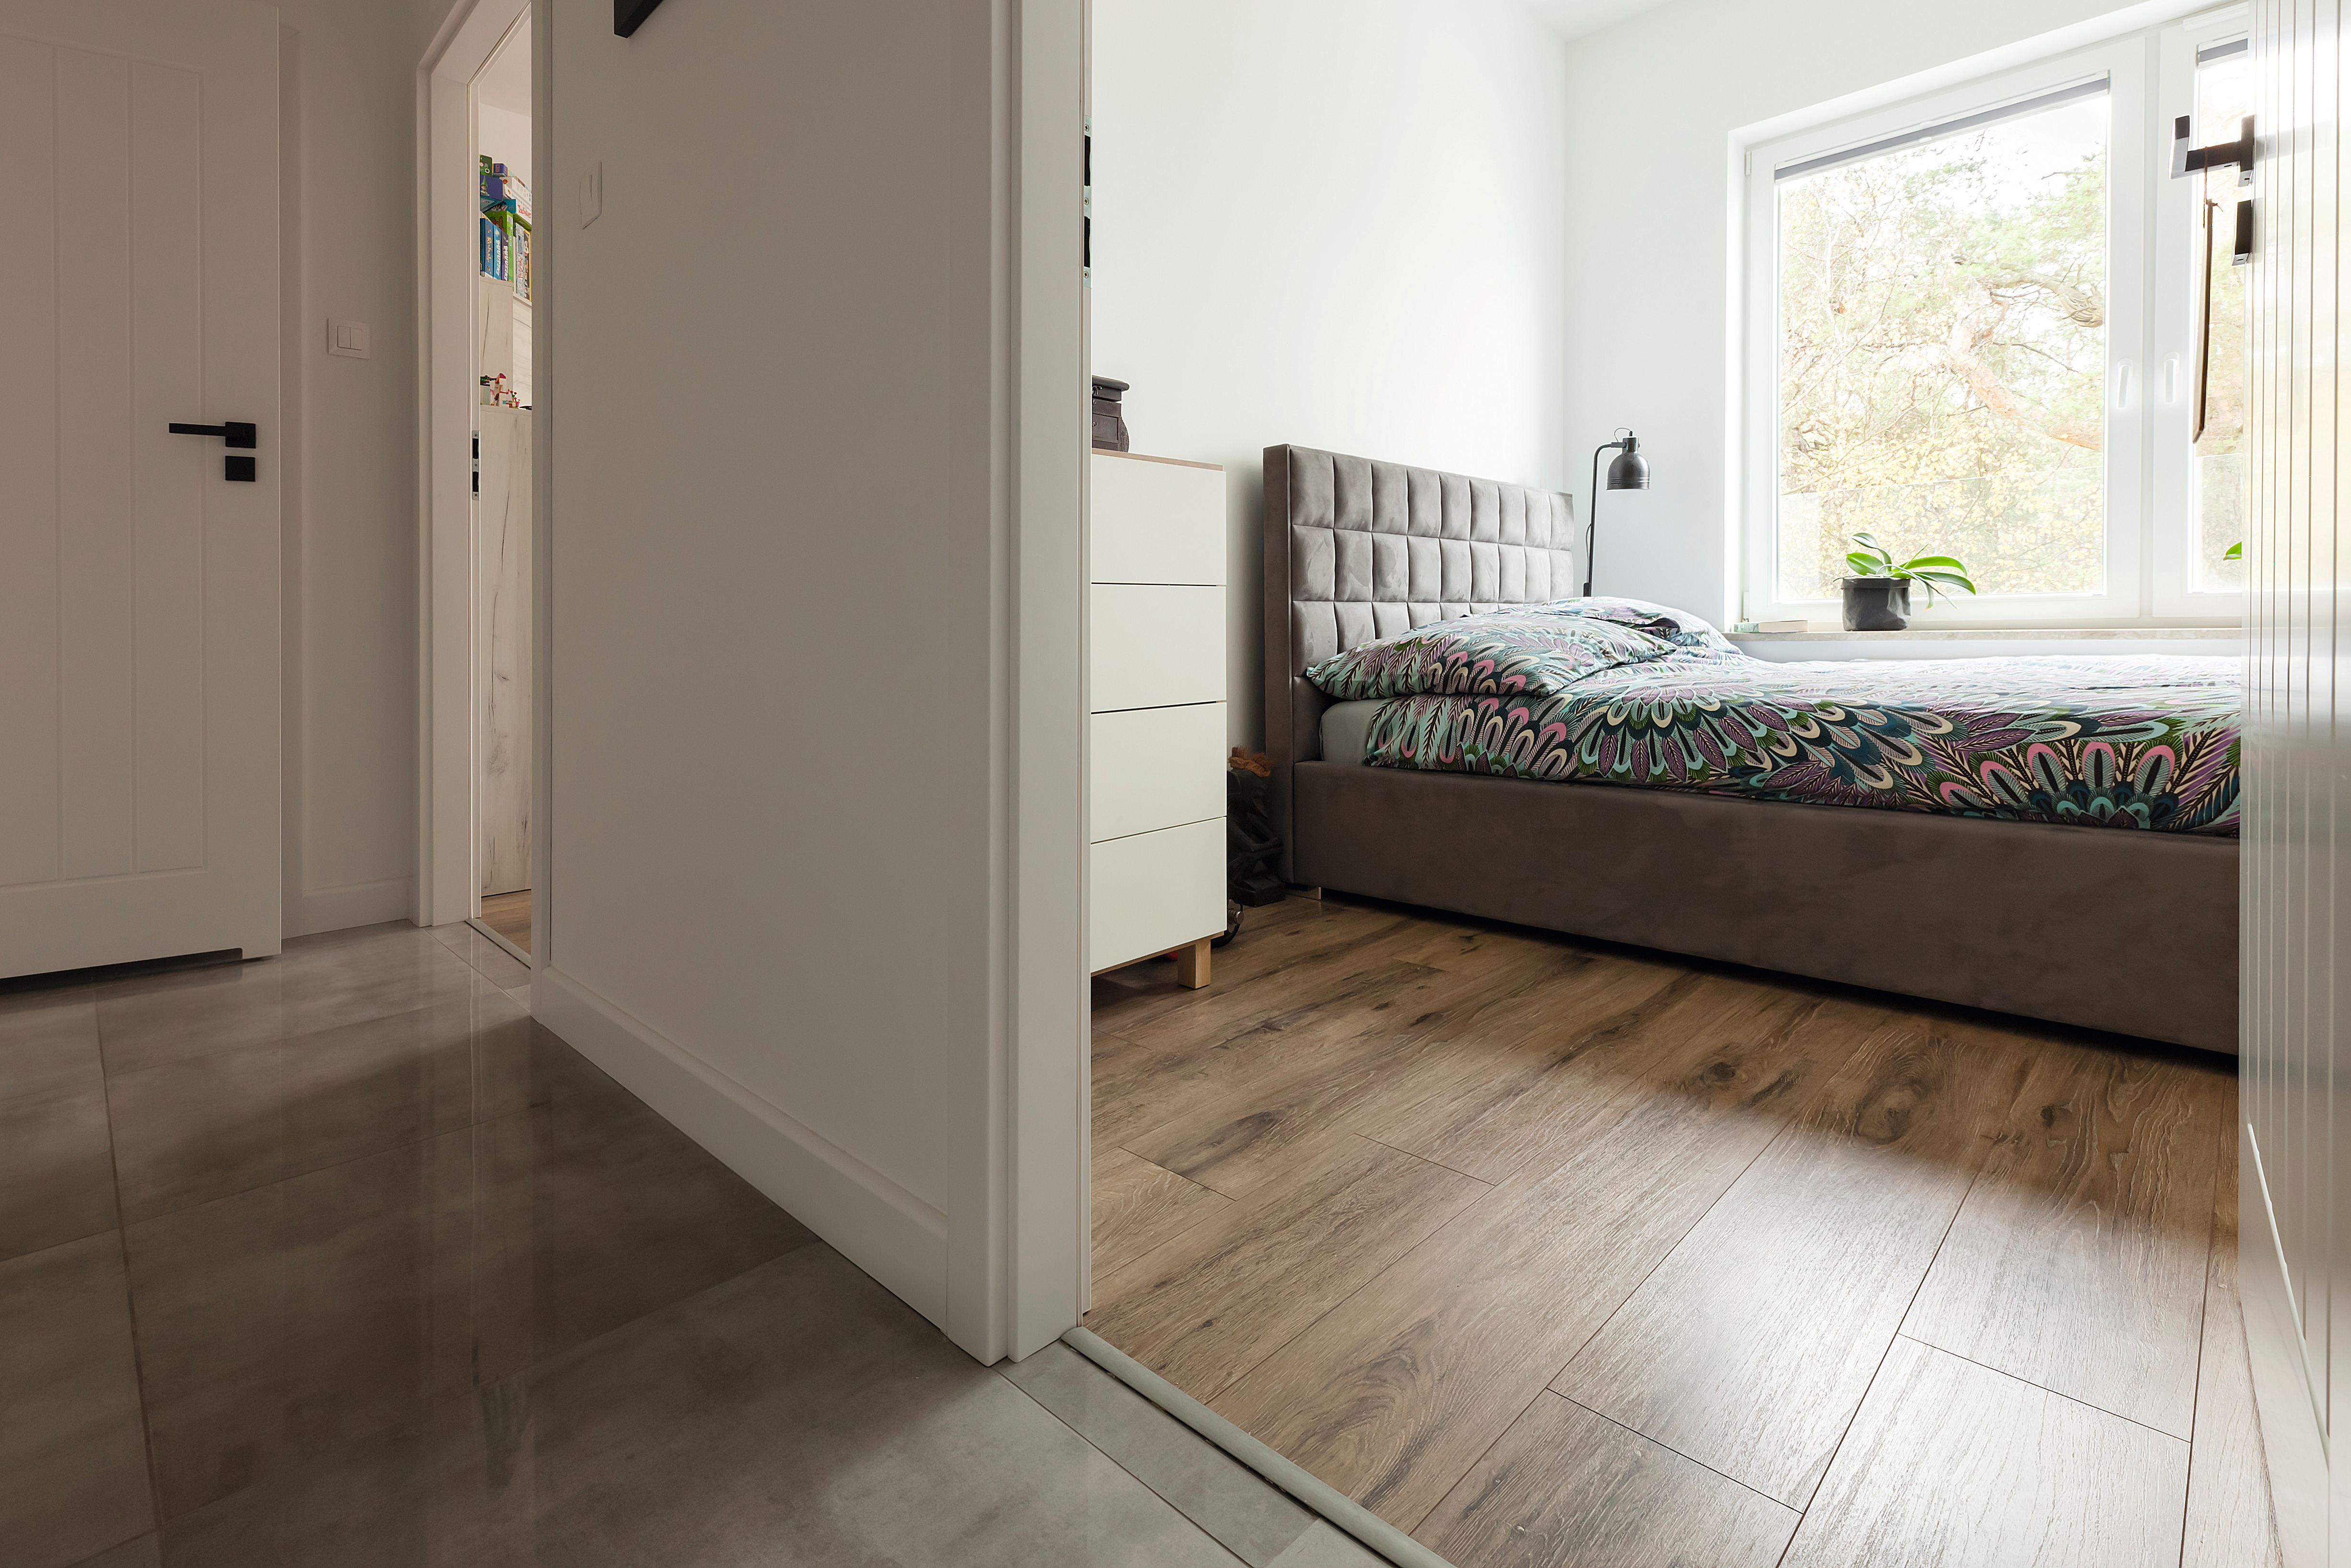 EGGER laminaatvloer – een allrounder voor elke woning.